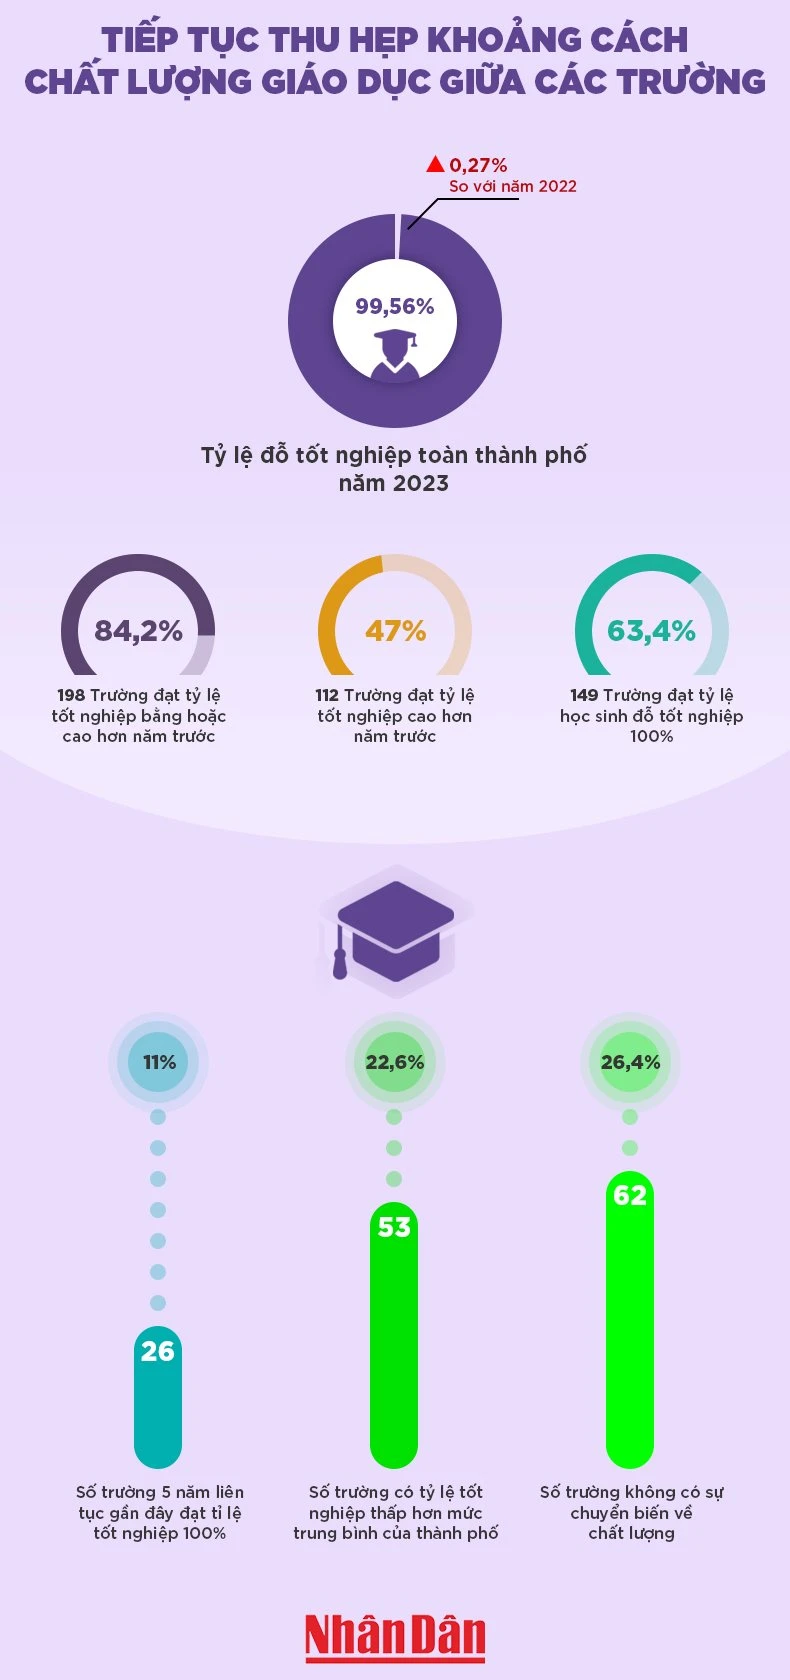 [Infographic] Tiếp tục thu hẹp khoảng cách chất lượng giáo dục giữa các trường ảnh 1